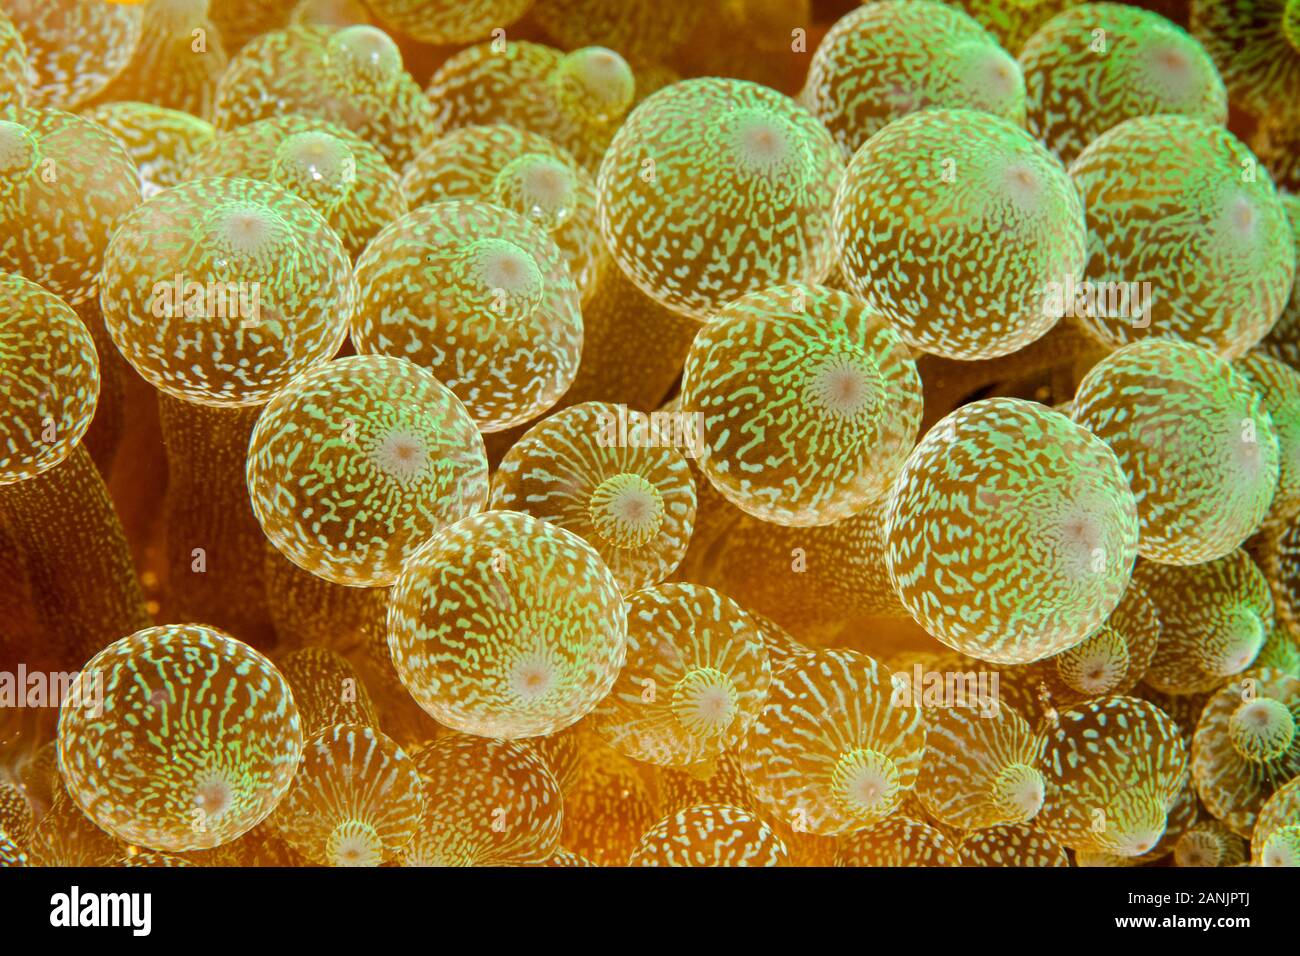 Dettaglio del bulbo tentacoli di bubble-punta anemone marittimo, Entacmaea quadricolor, Maldive, Oceano Indiano Foto Stock